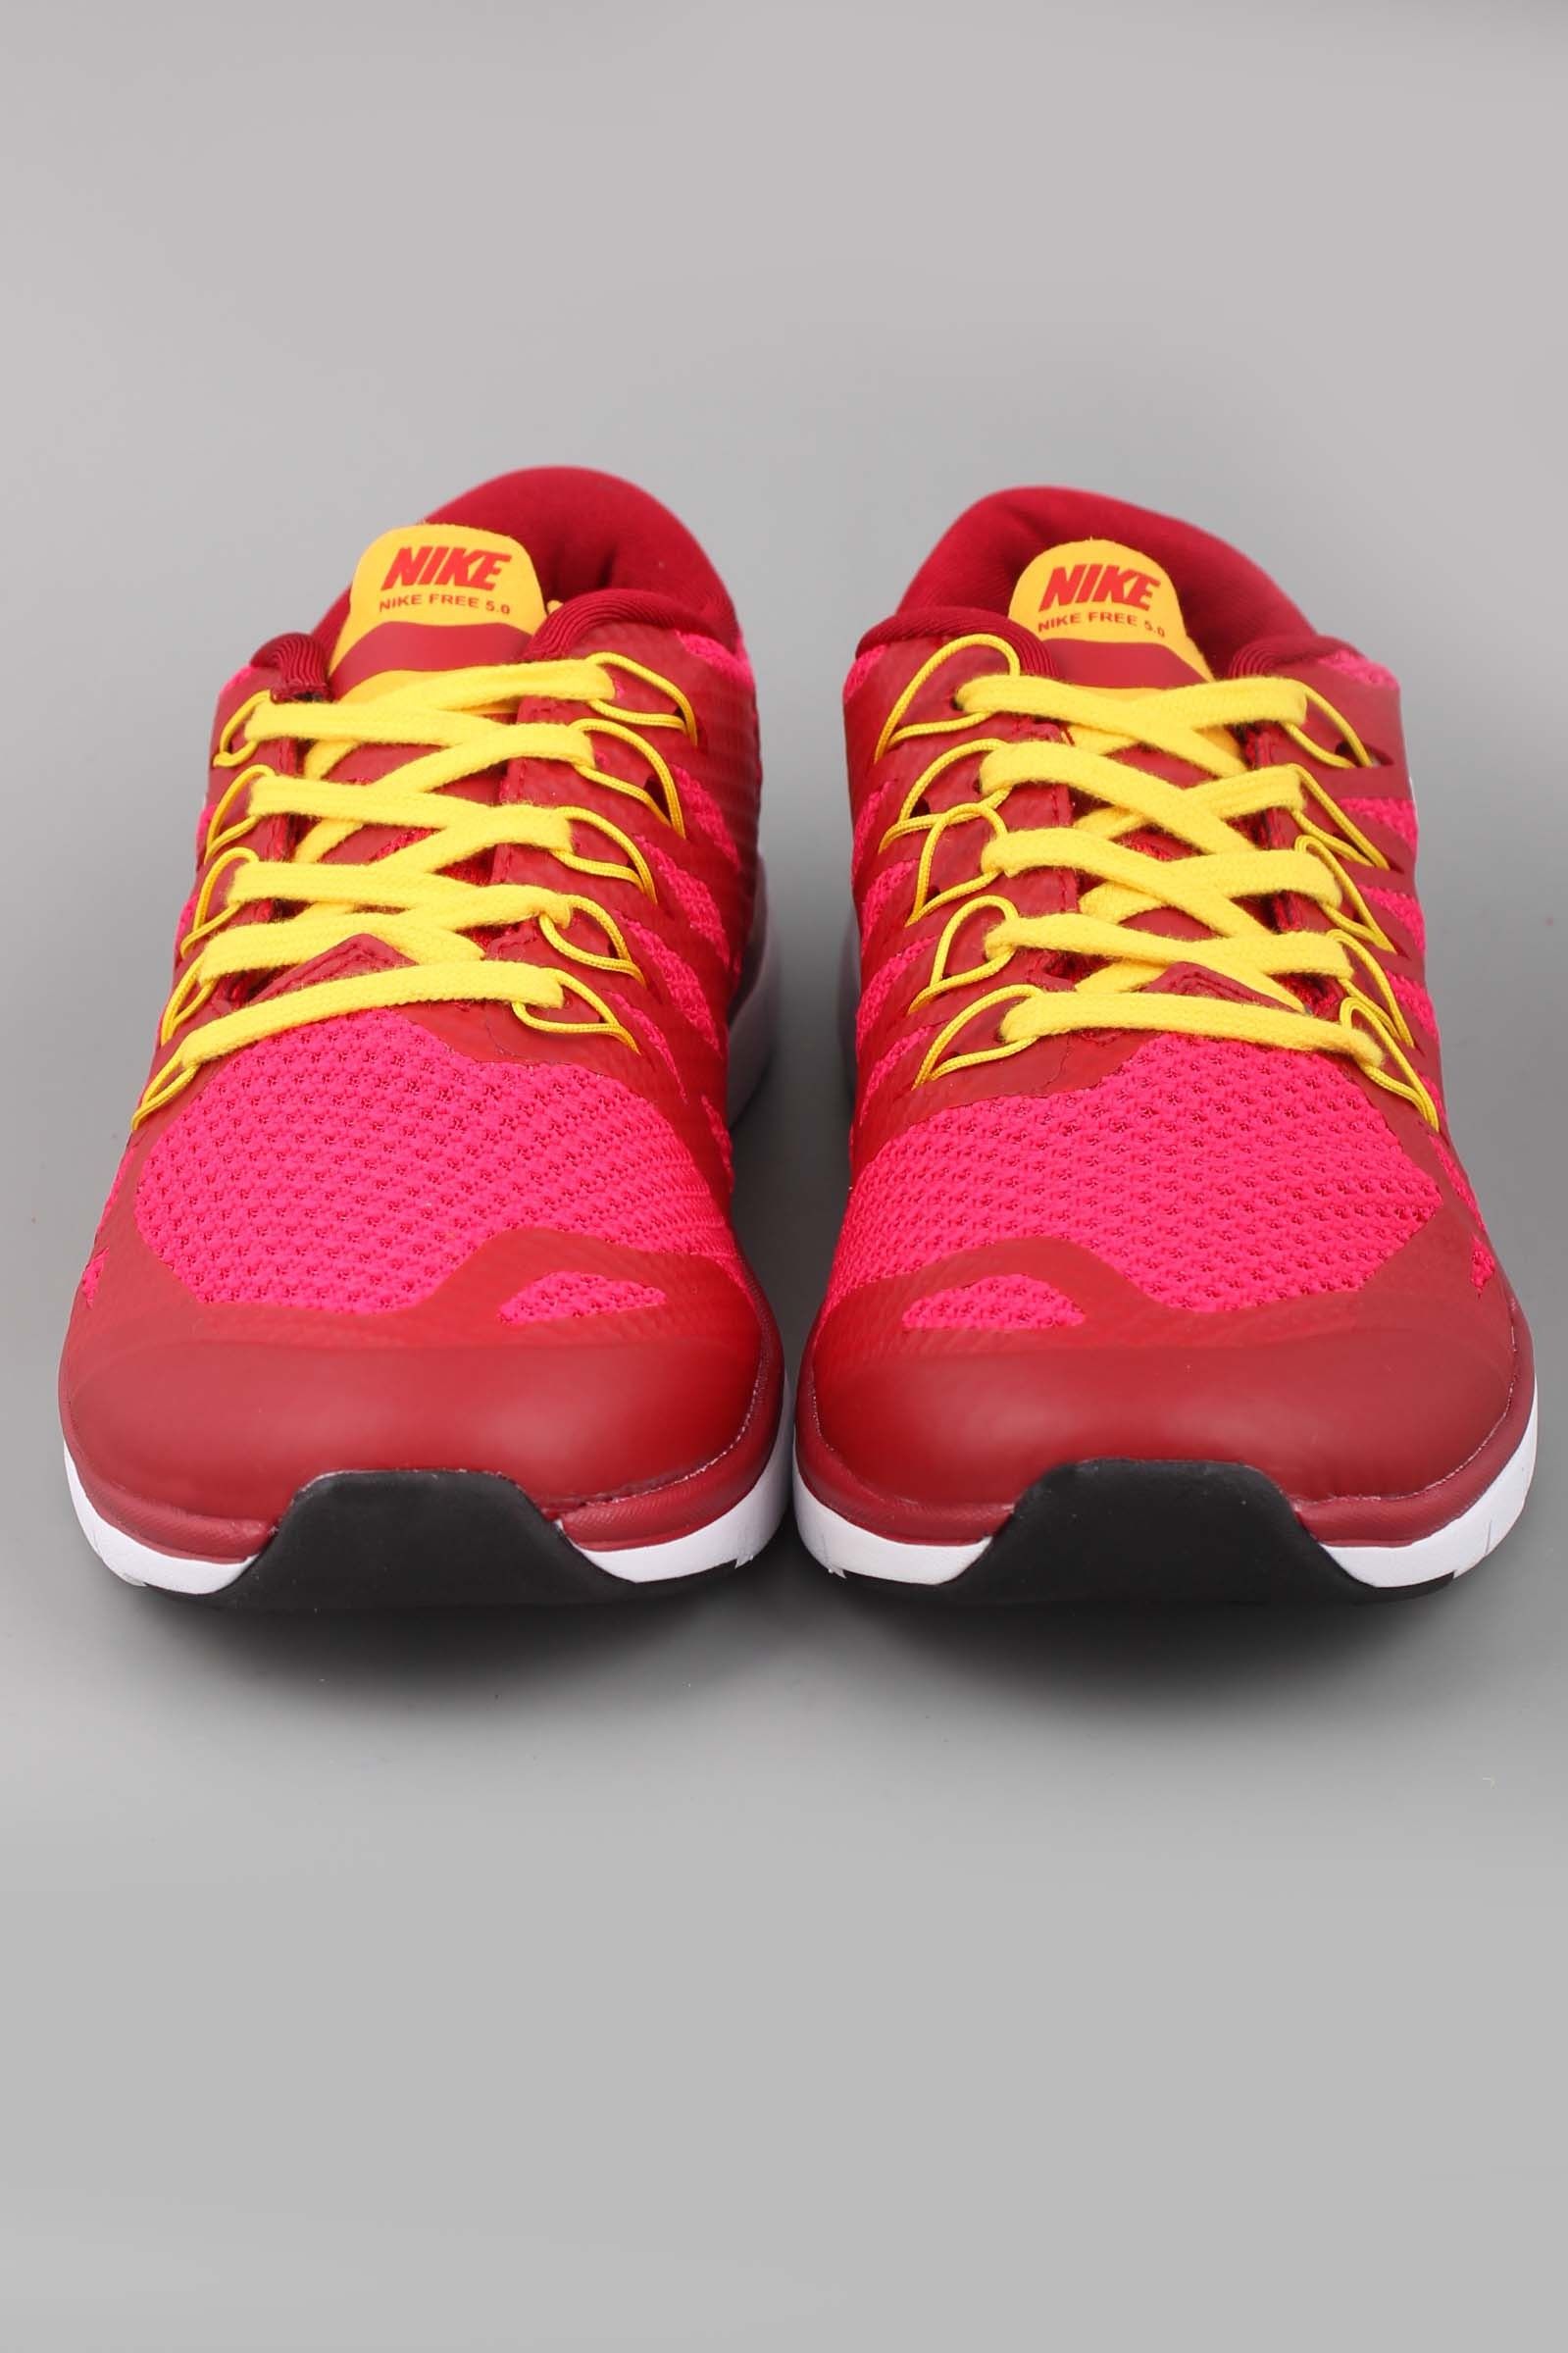 Кроссовки Nike Free Run 5.0 красные